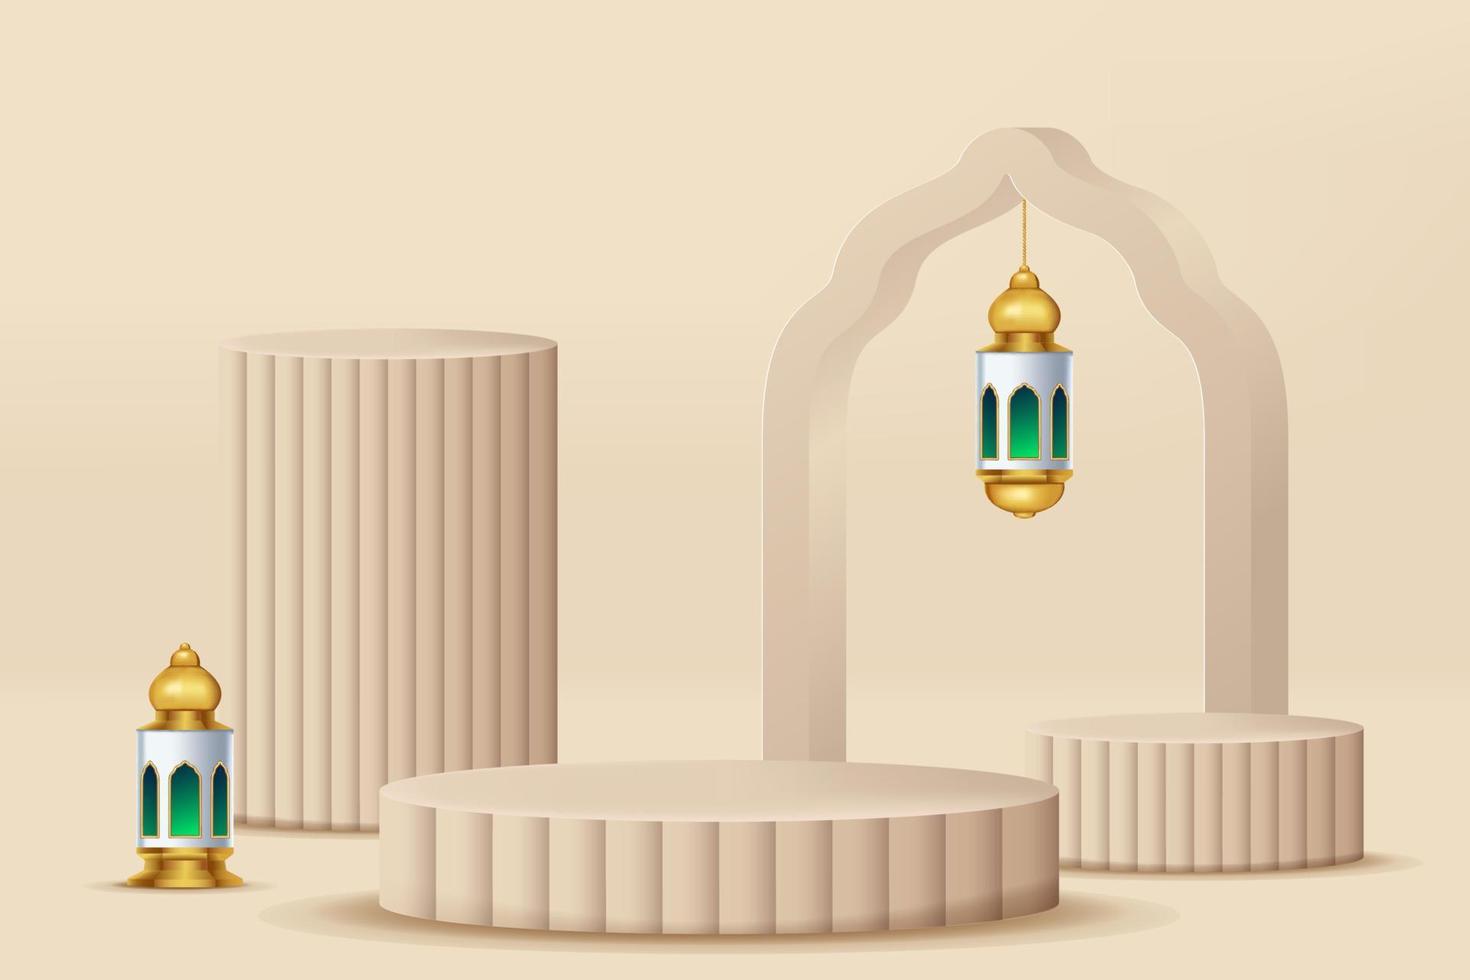 celebración islámica 3d realista con adorno islámico y podio de producto. ilustración vectorial 3d vector